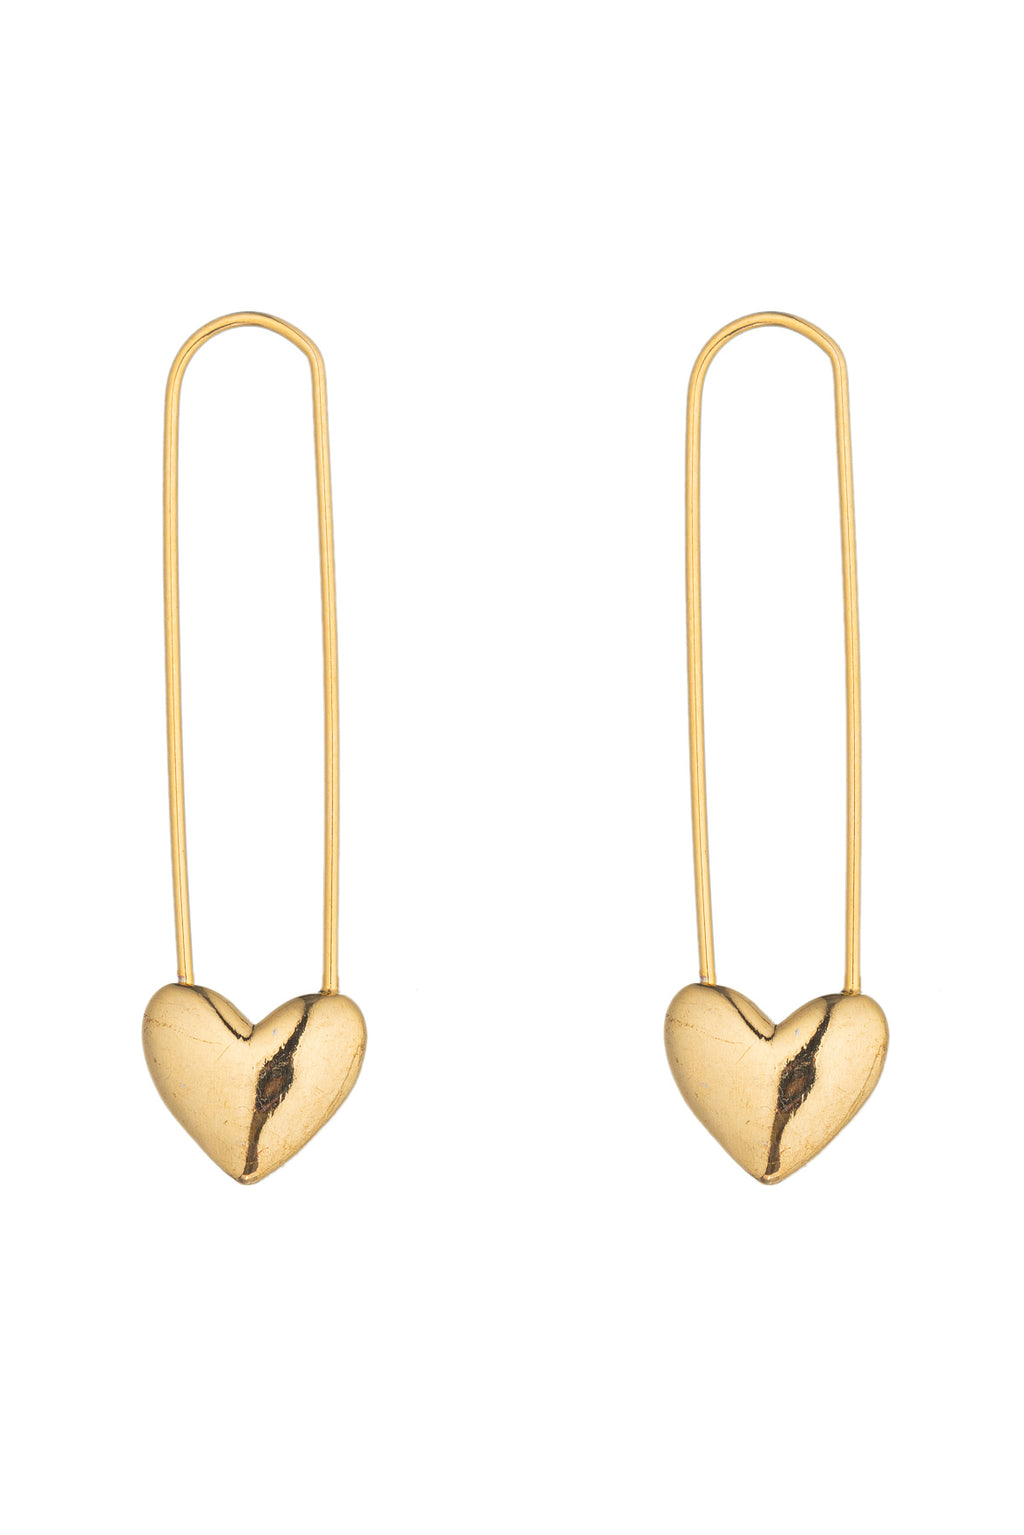 Gold tone brass double heart pendant earrings.